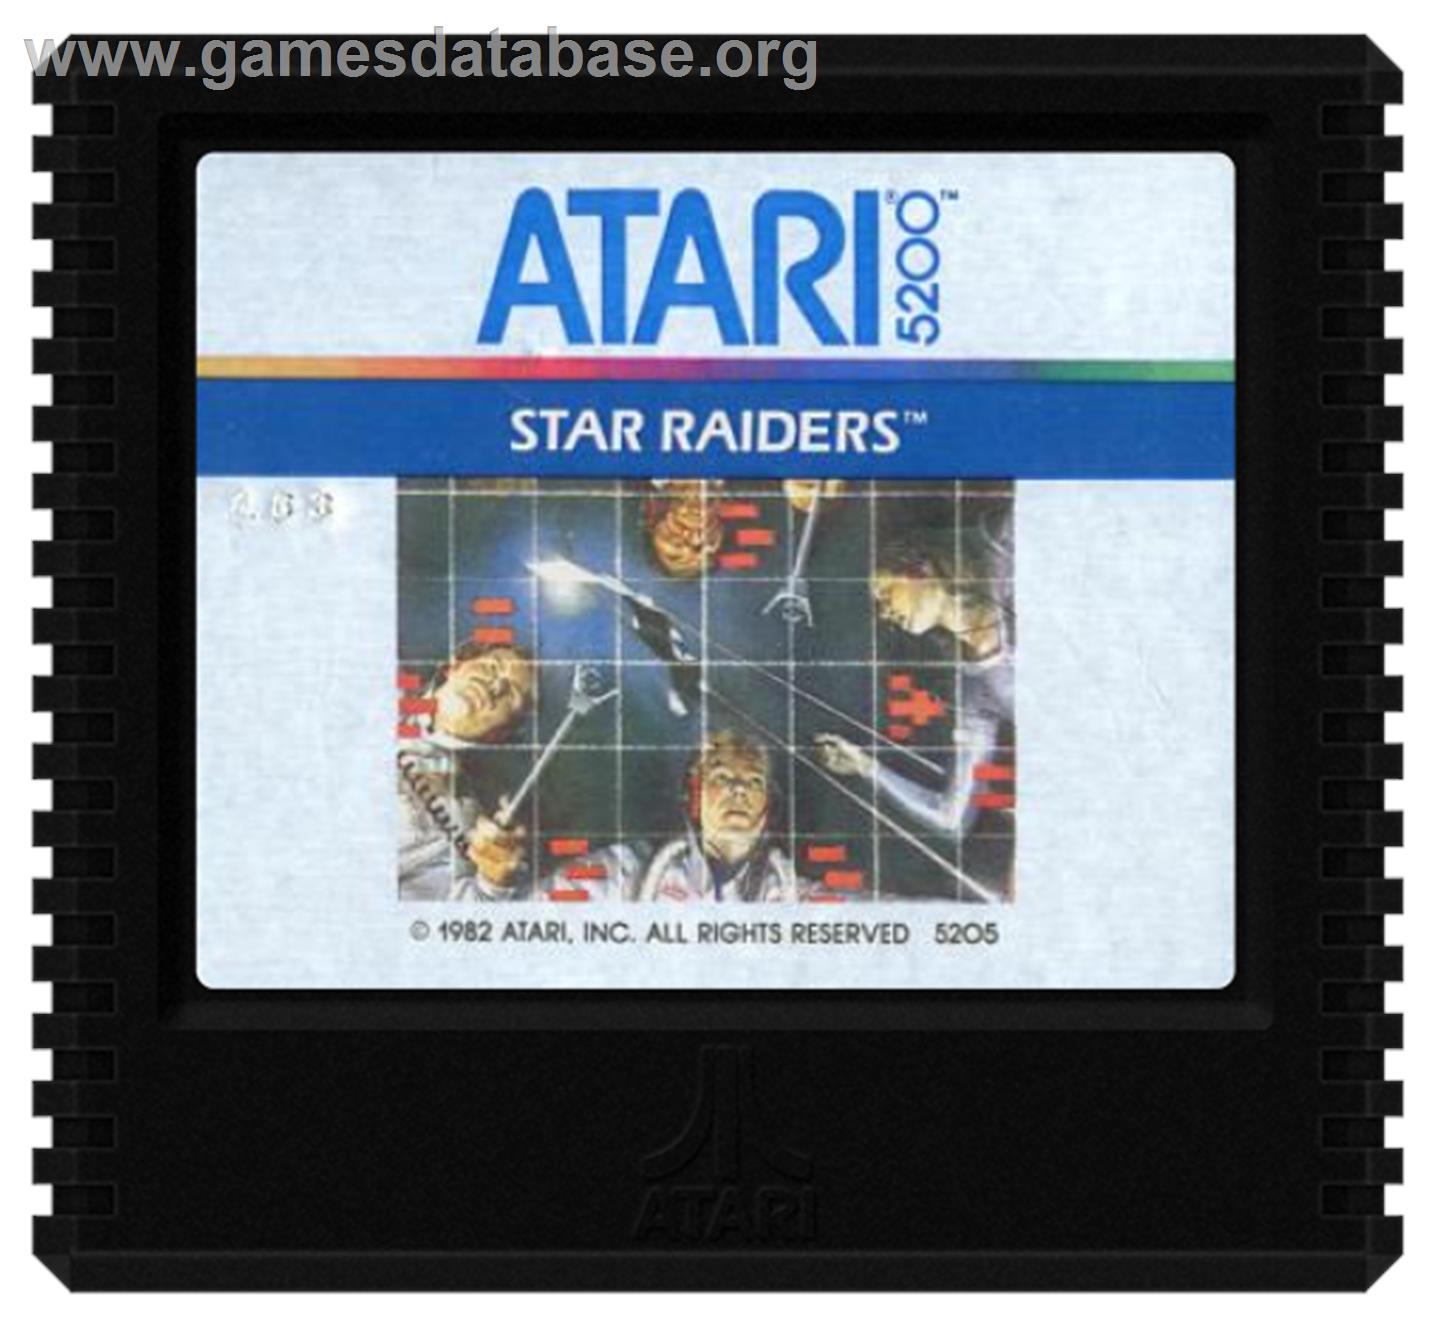 Star Raiders - Atari 5200 - Artwork - Cartridge